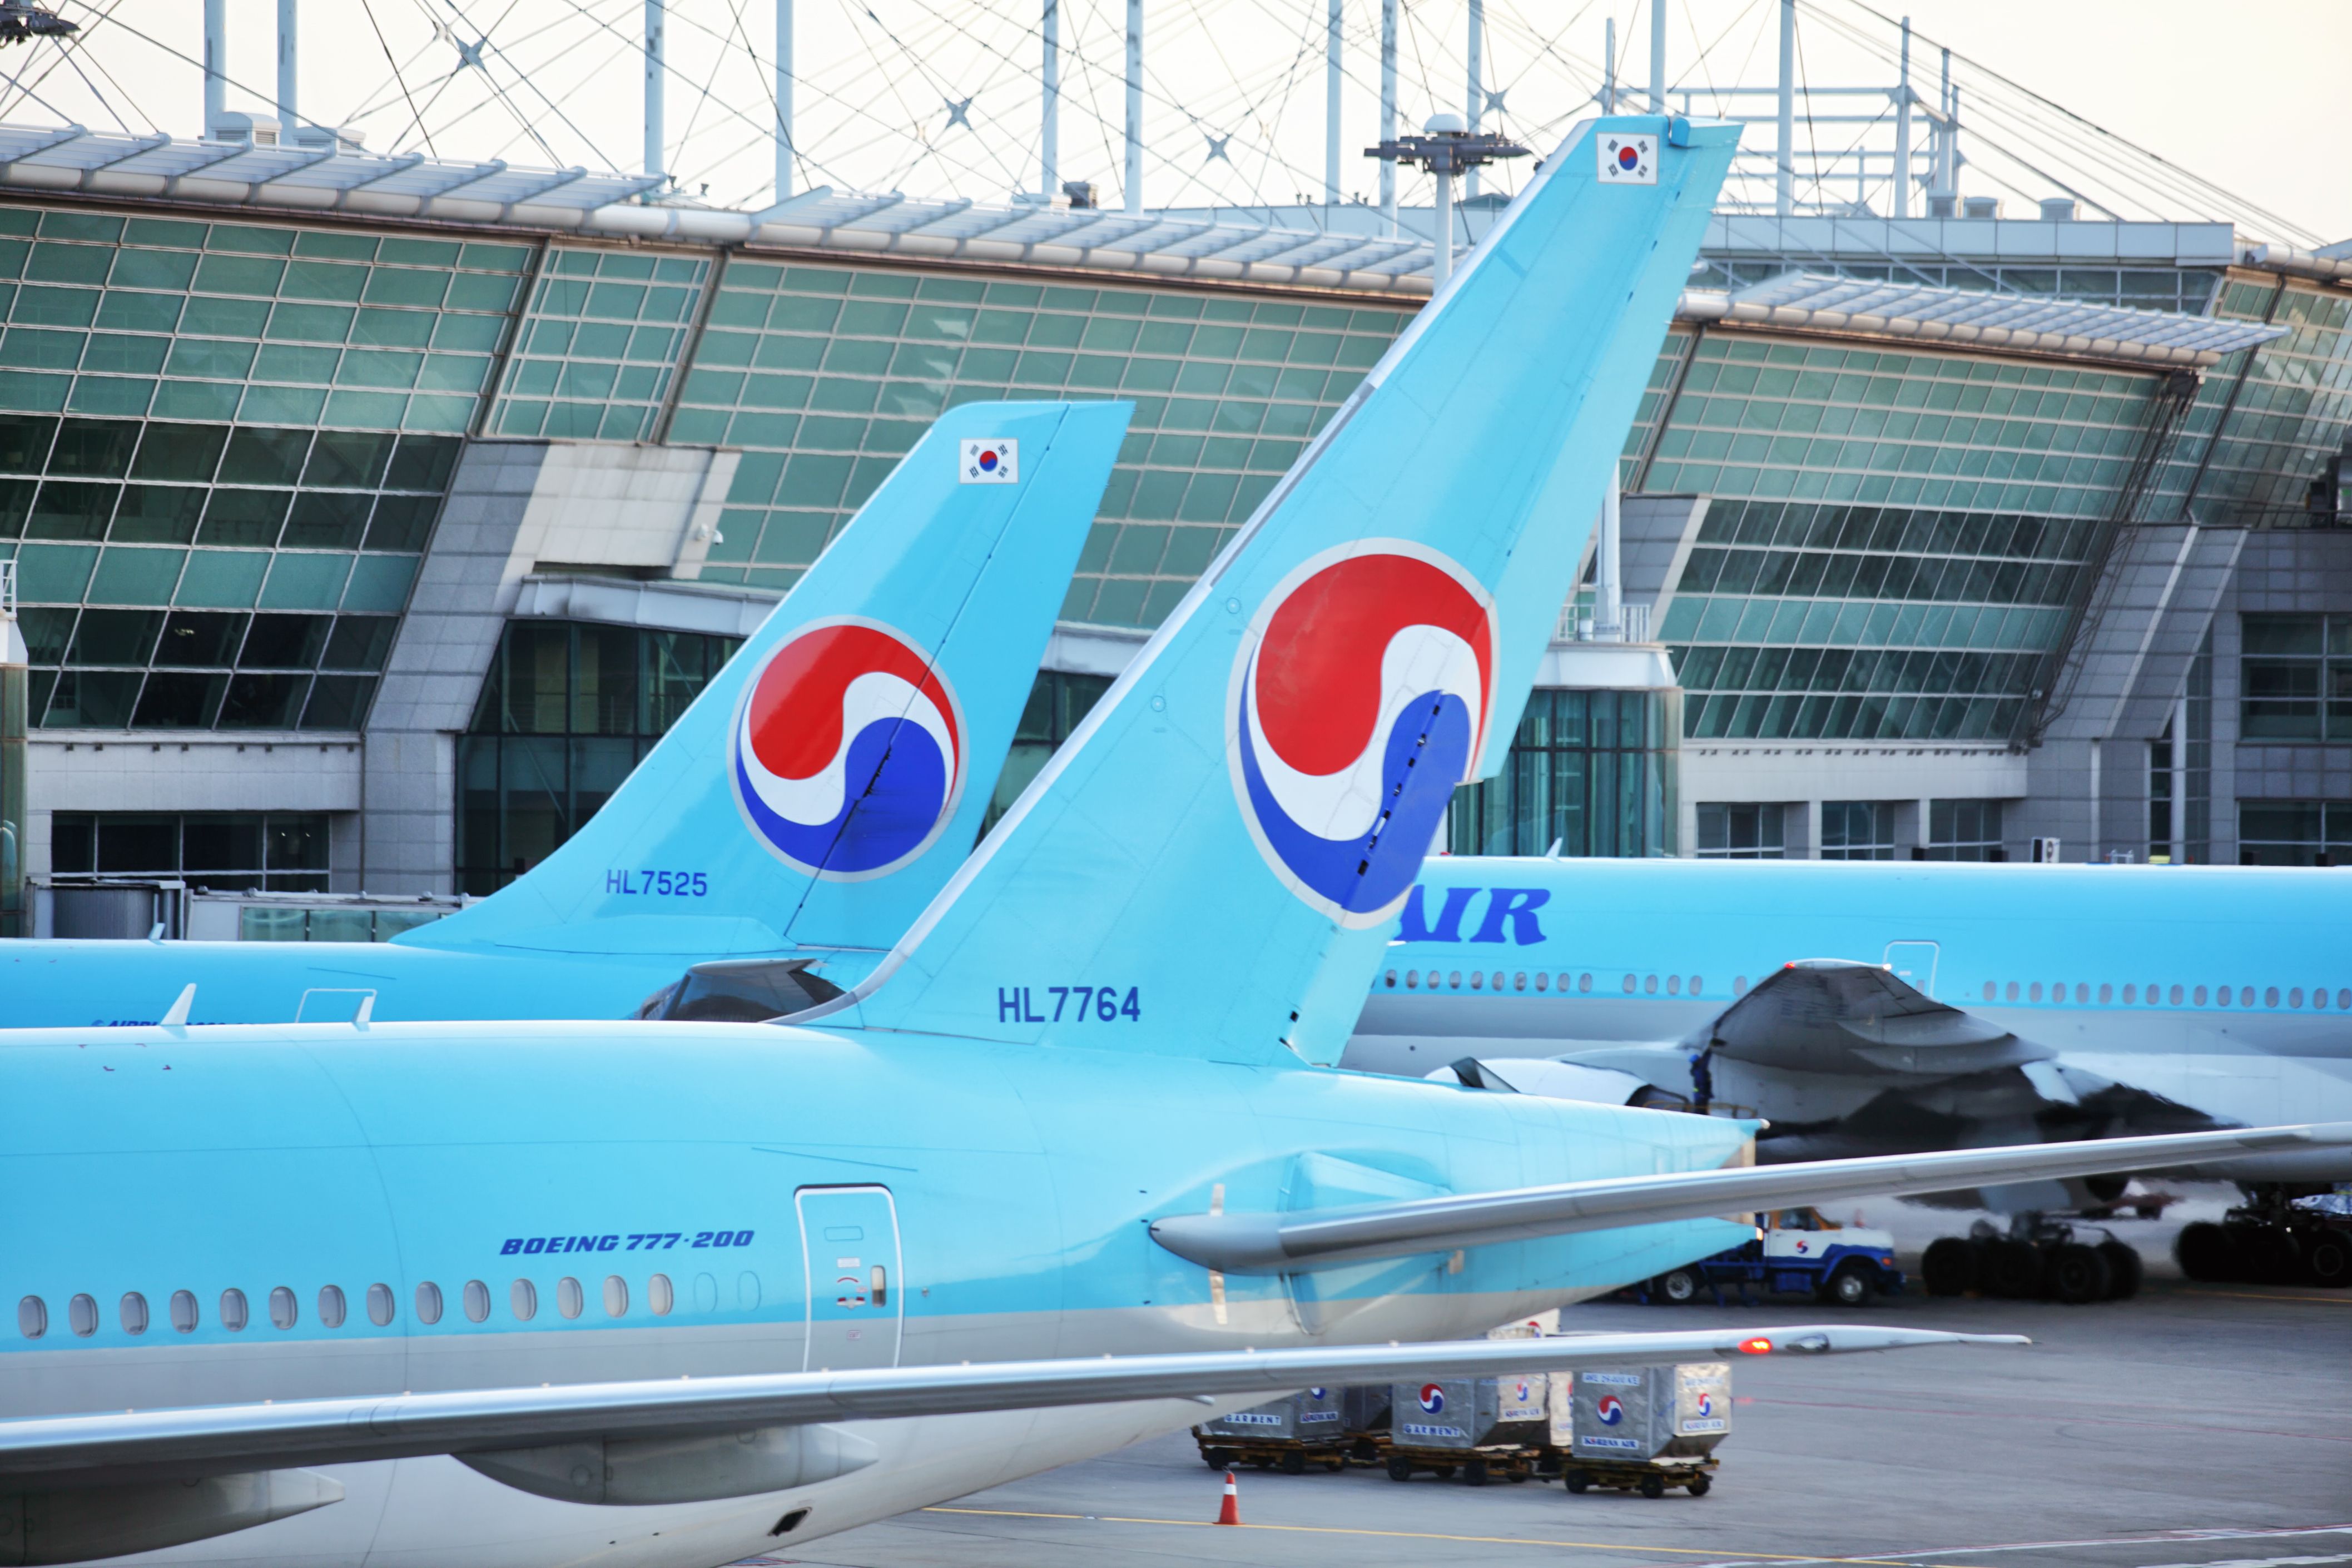 Korean Air Boeing 777-200s at Seoul Incheon Airport